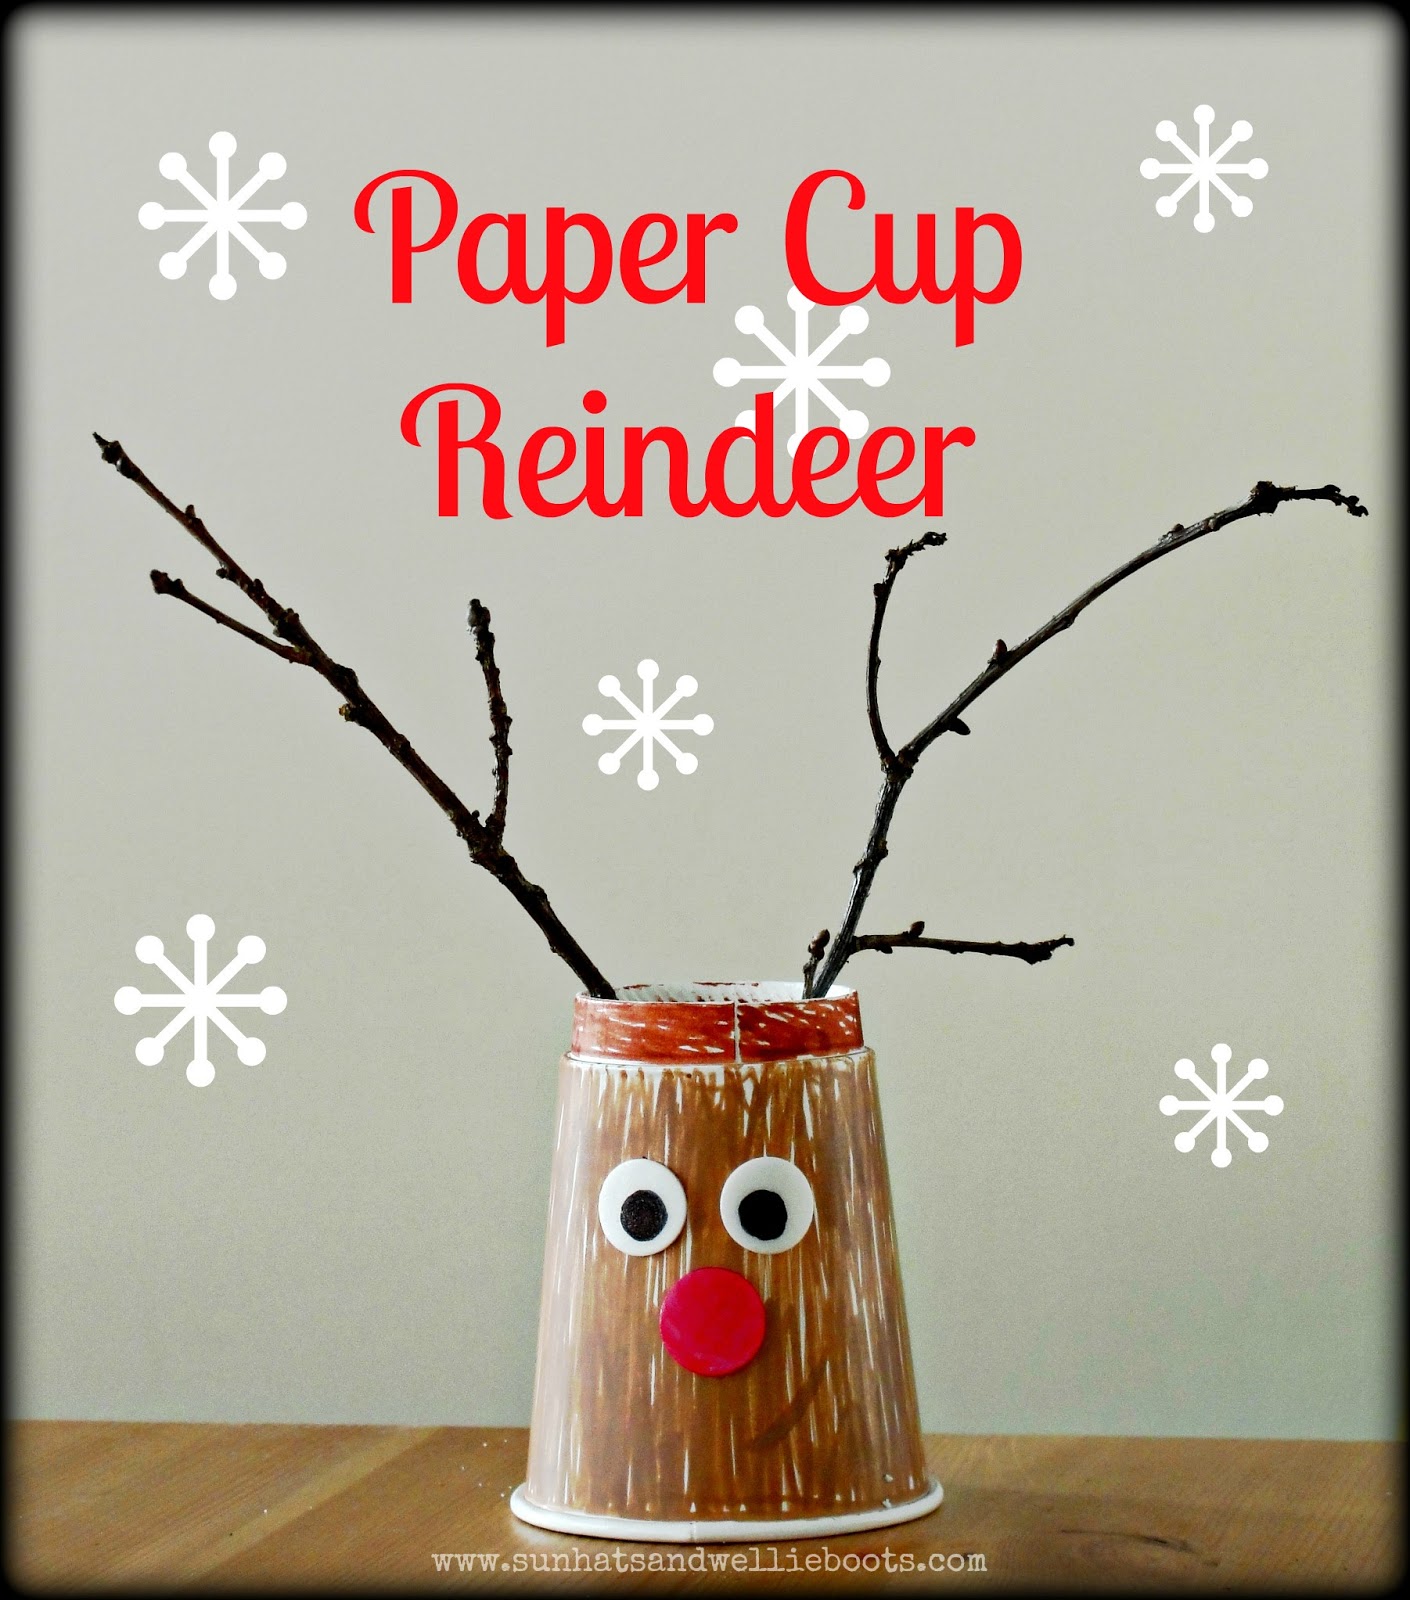 https://4.bp.blogspot.com/-QO0H5bEeEBA/UL3VHIEG1nI/AAAAAAAAIFY/Z6PViS2mlpI/s1600/paper+cup+reindeer.jpg